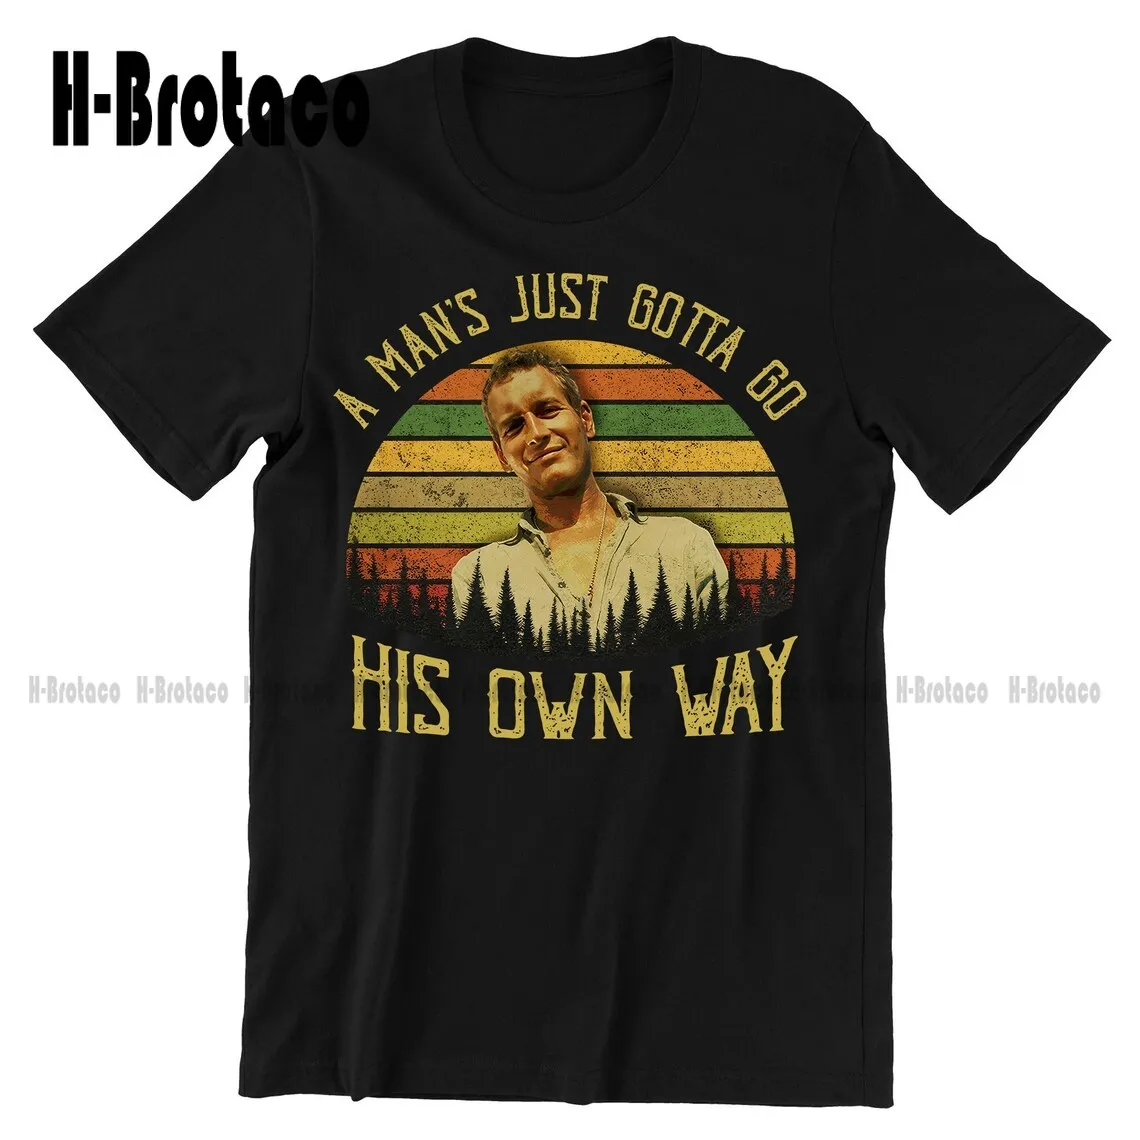 

Винтажная Футболка люка Джексона, Мужская футболка с надписью «Just Go His Own Way», футболка унисекс в стиле 1950-х с цитатами фильмов, ТВ-шоу, индивидуальный подарок